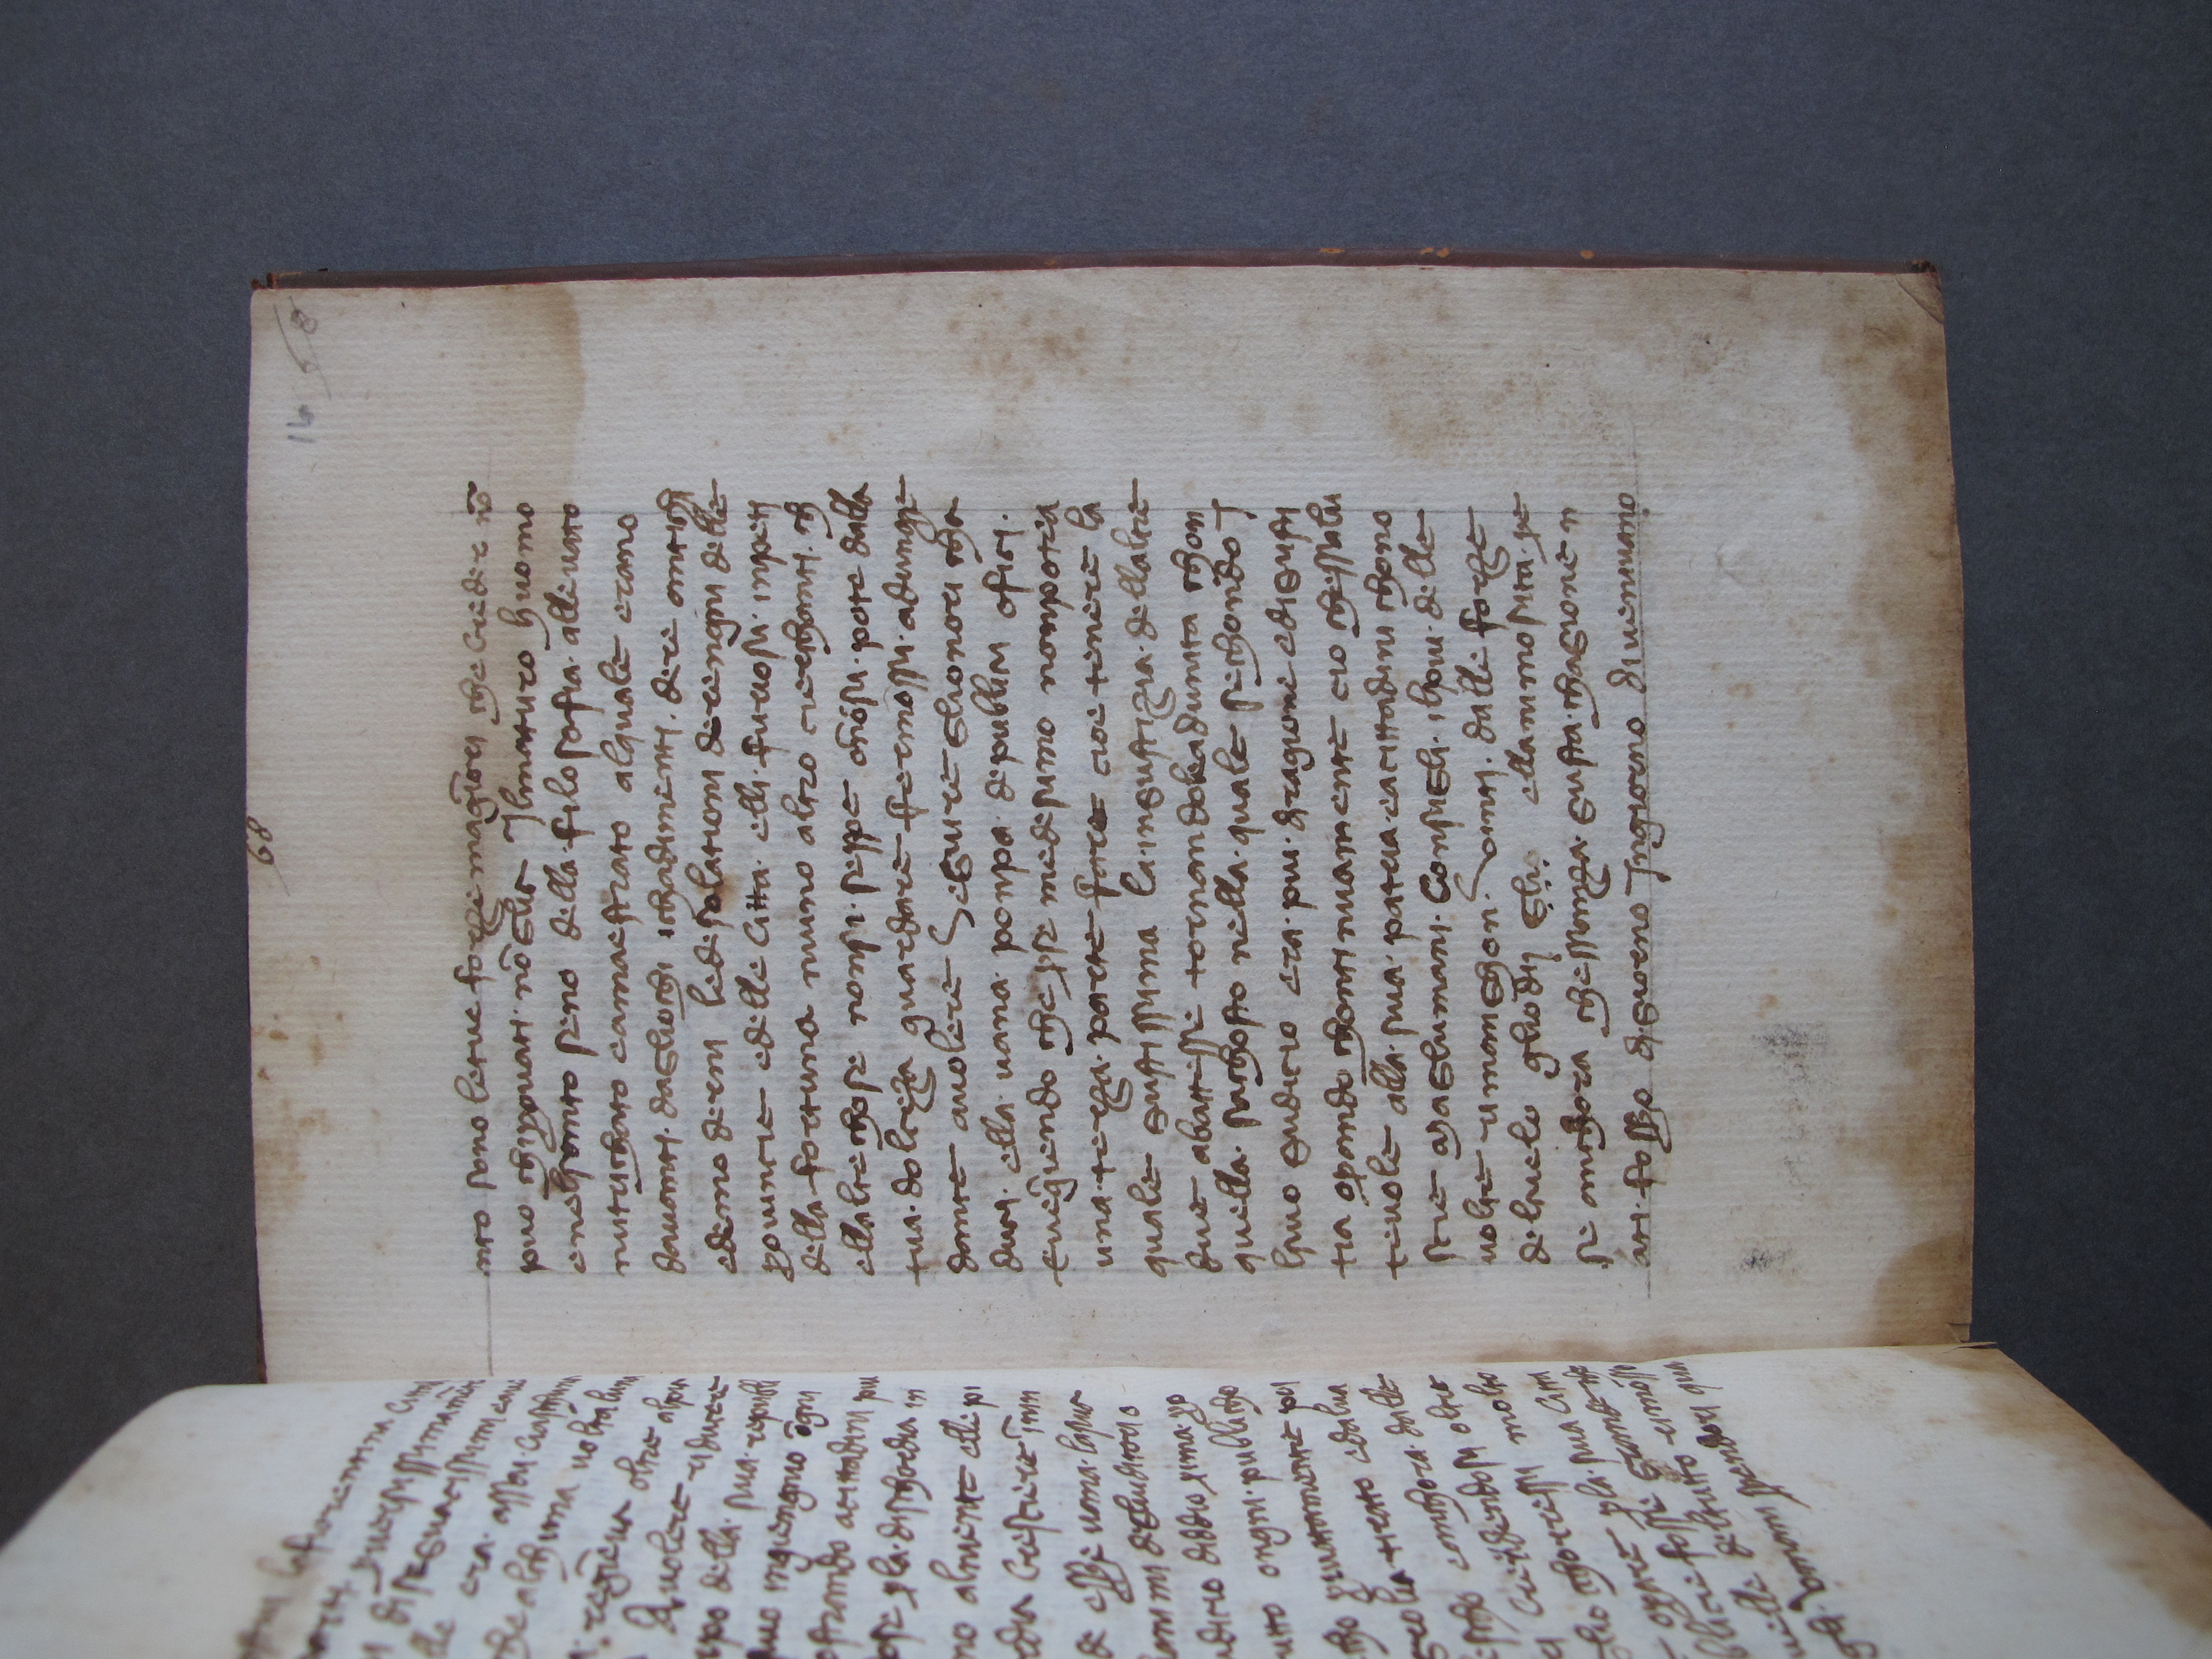 Folio 16 recto